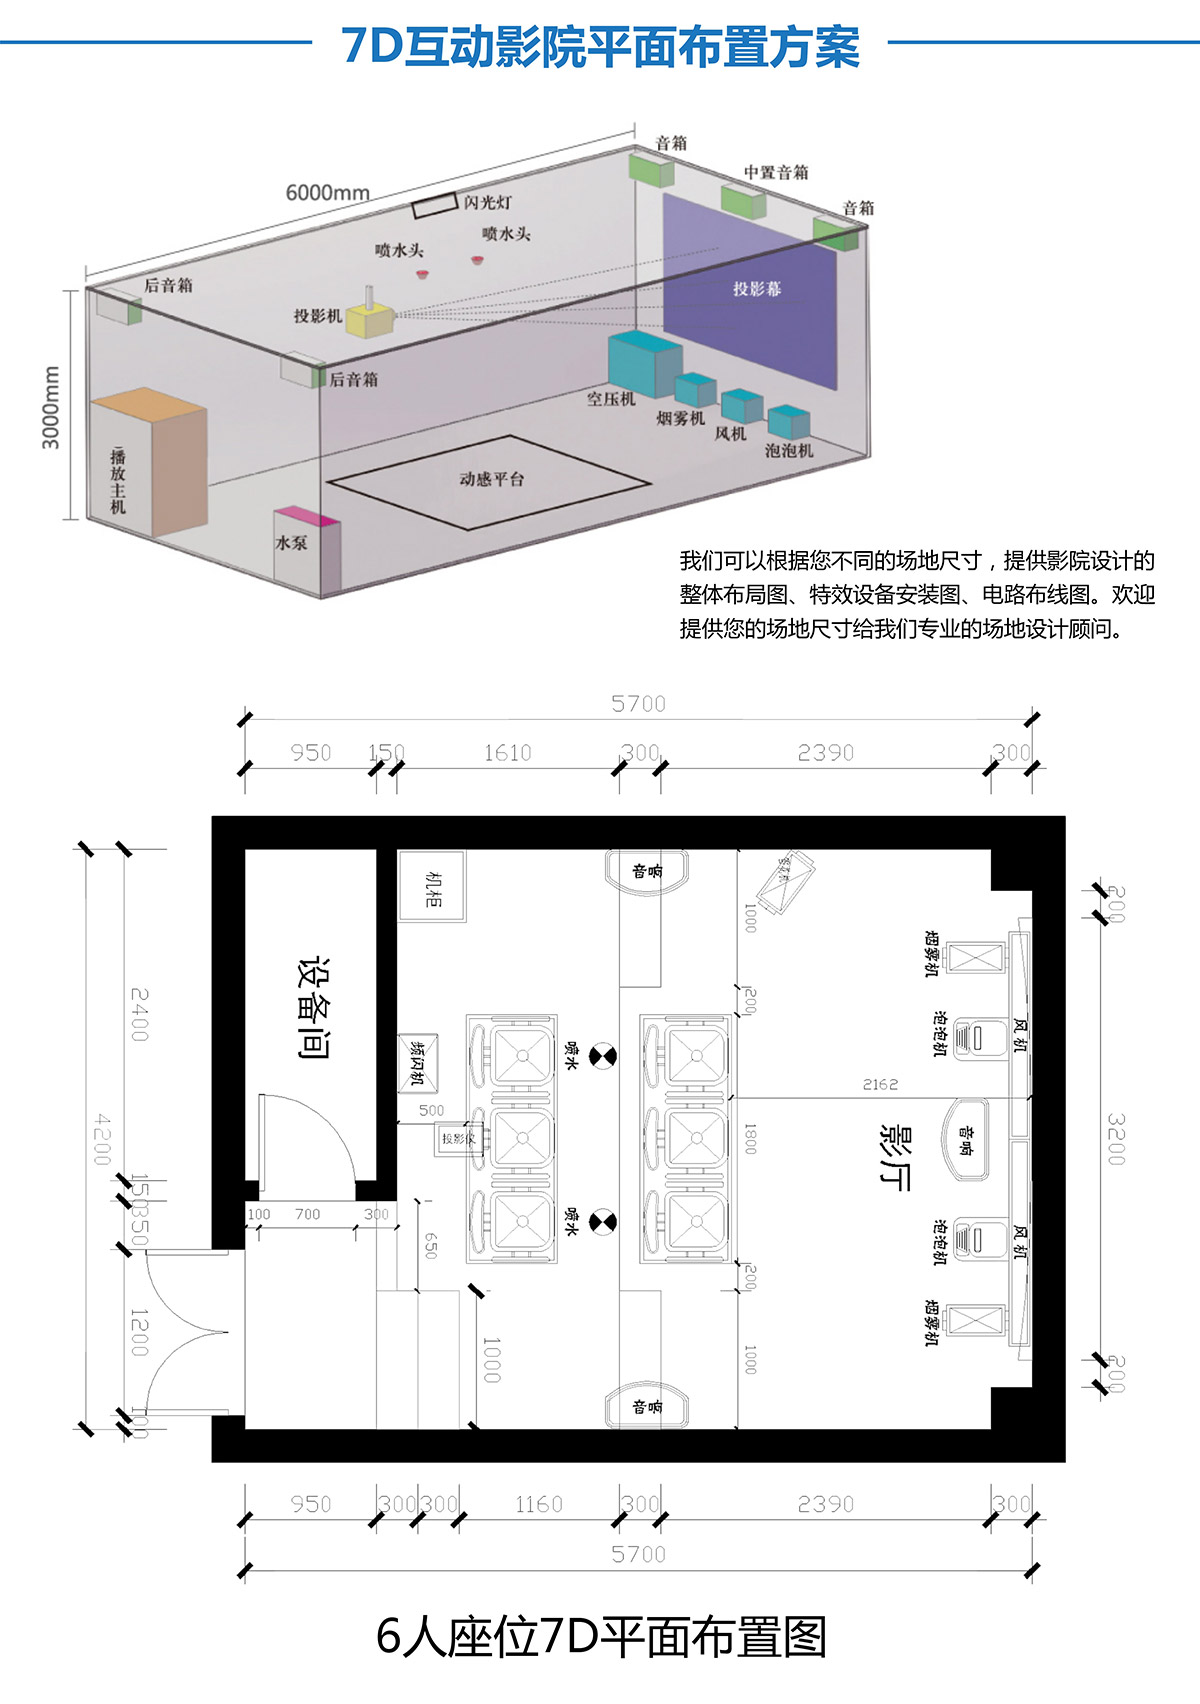 广东省广州奇影幻境7D互动影院平面布置方案.jpg